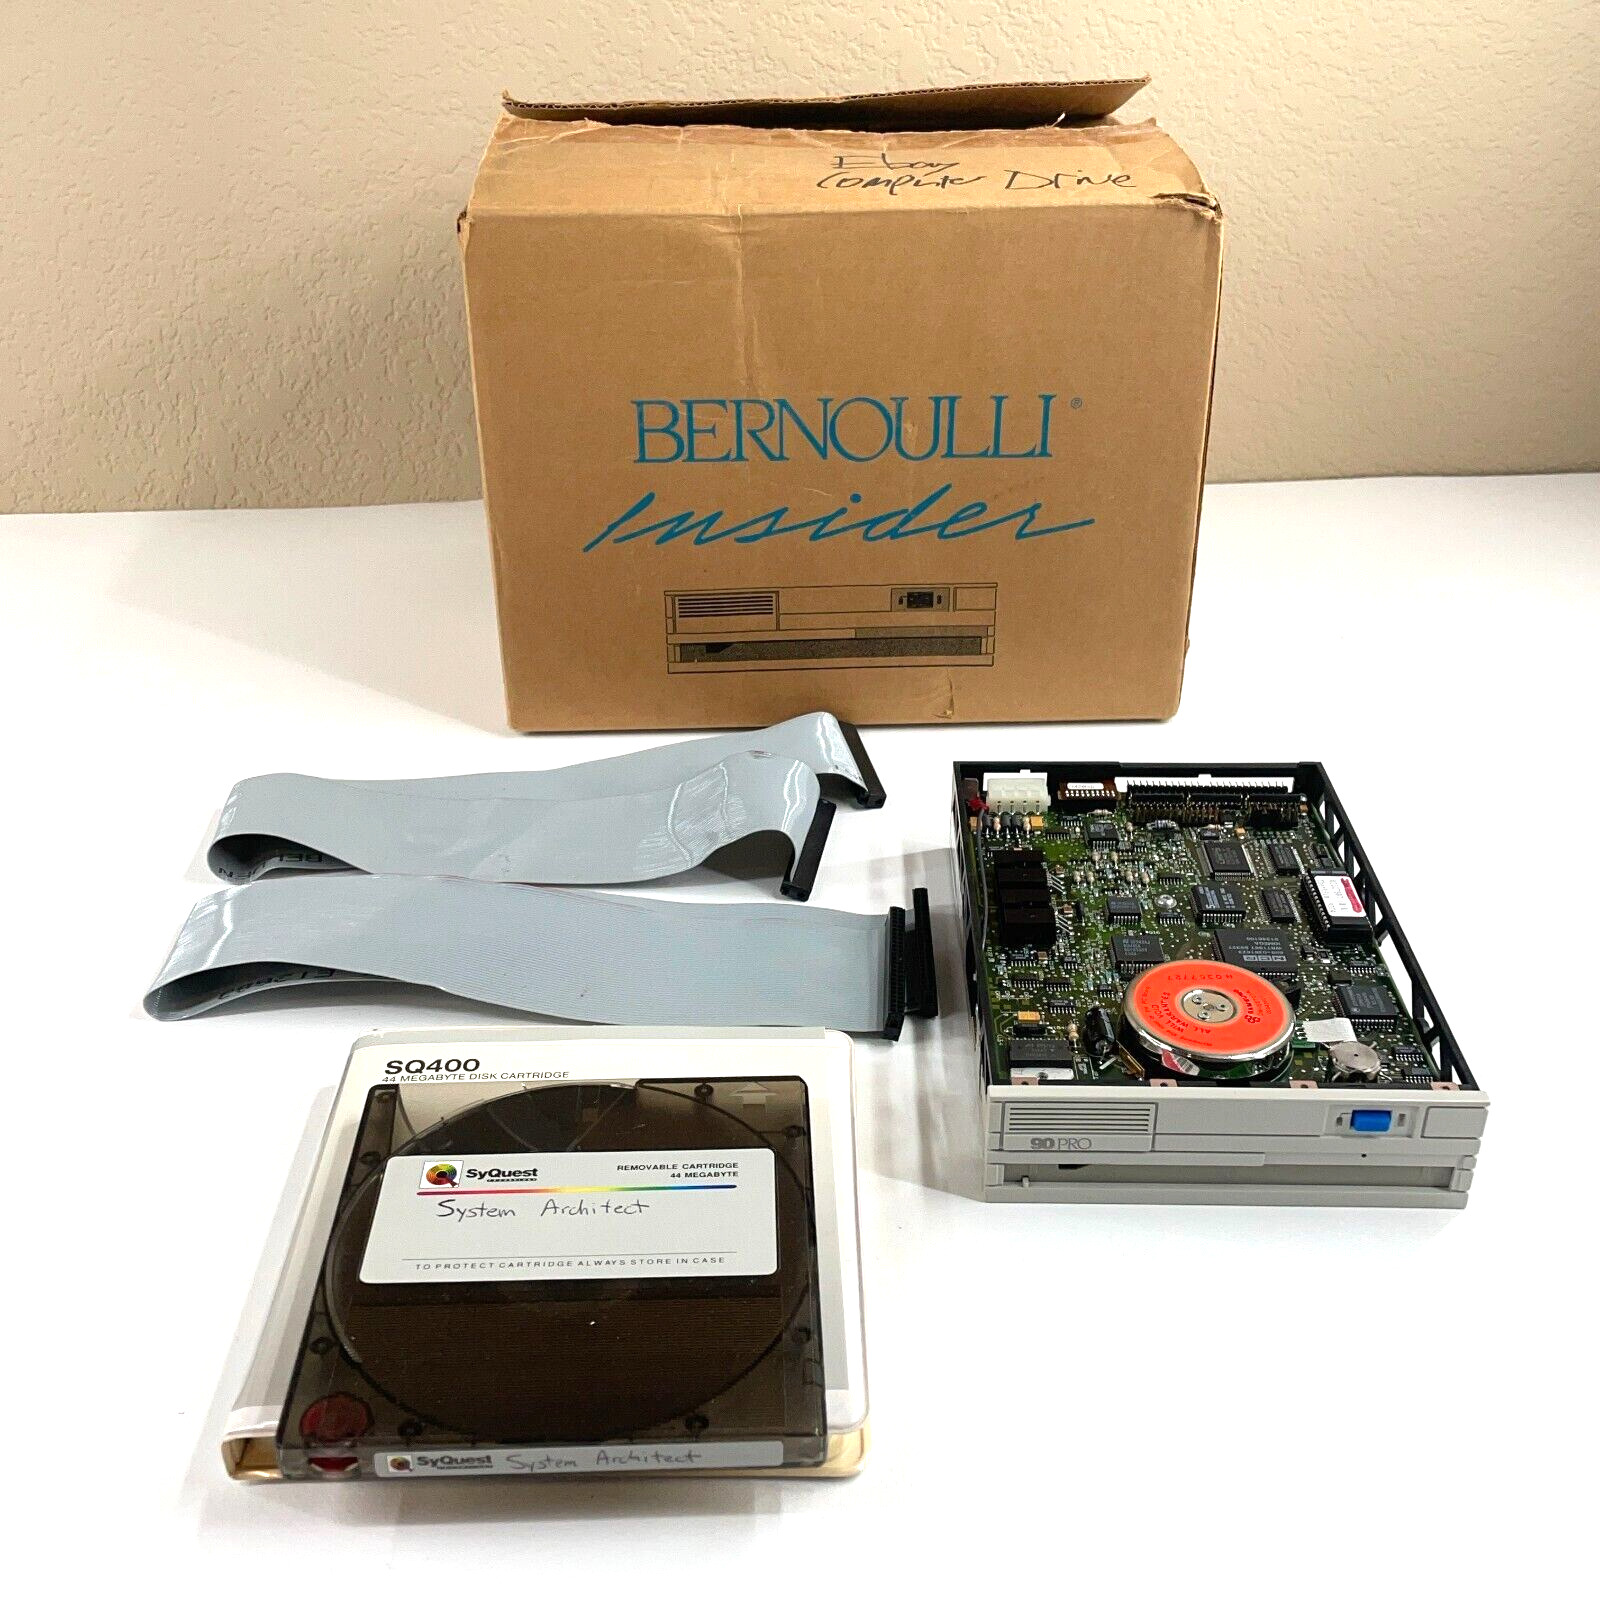 Iomega Bernoulli 90Pro Mac INTERNAL SCSI DRIVE - In original packaging